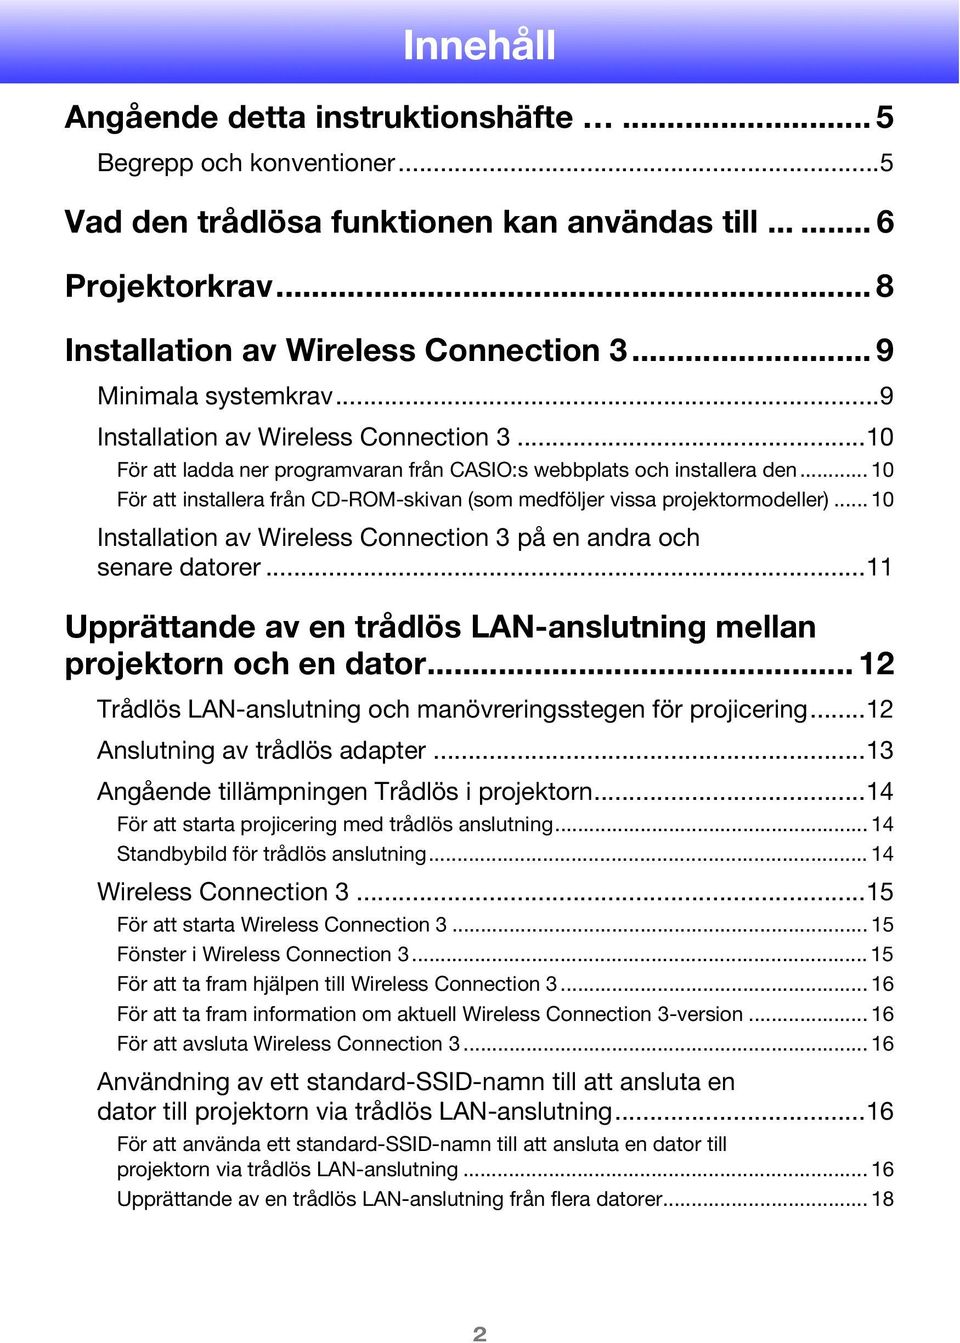 .. 10 För att installera från CD-ROM-skivan (som medföljer vissa projektormodeller)... 10 Installation av Wireless Connection 3 på en andra och senare datorer.